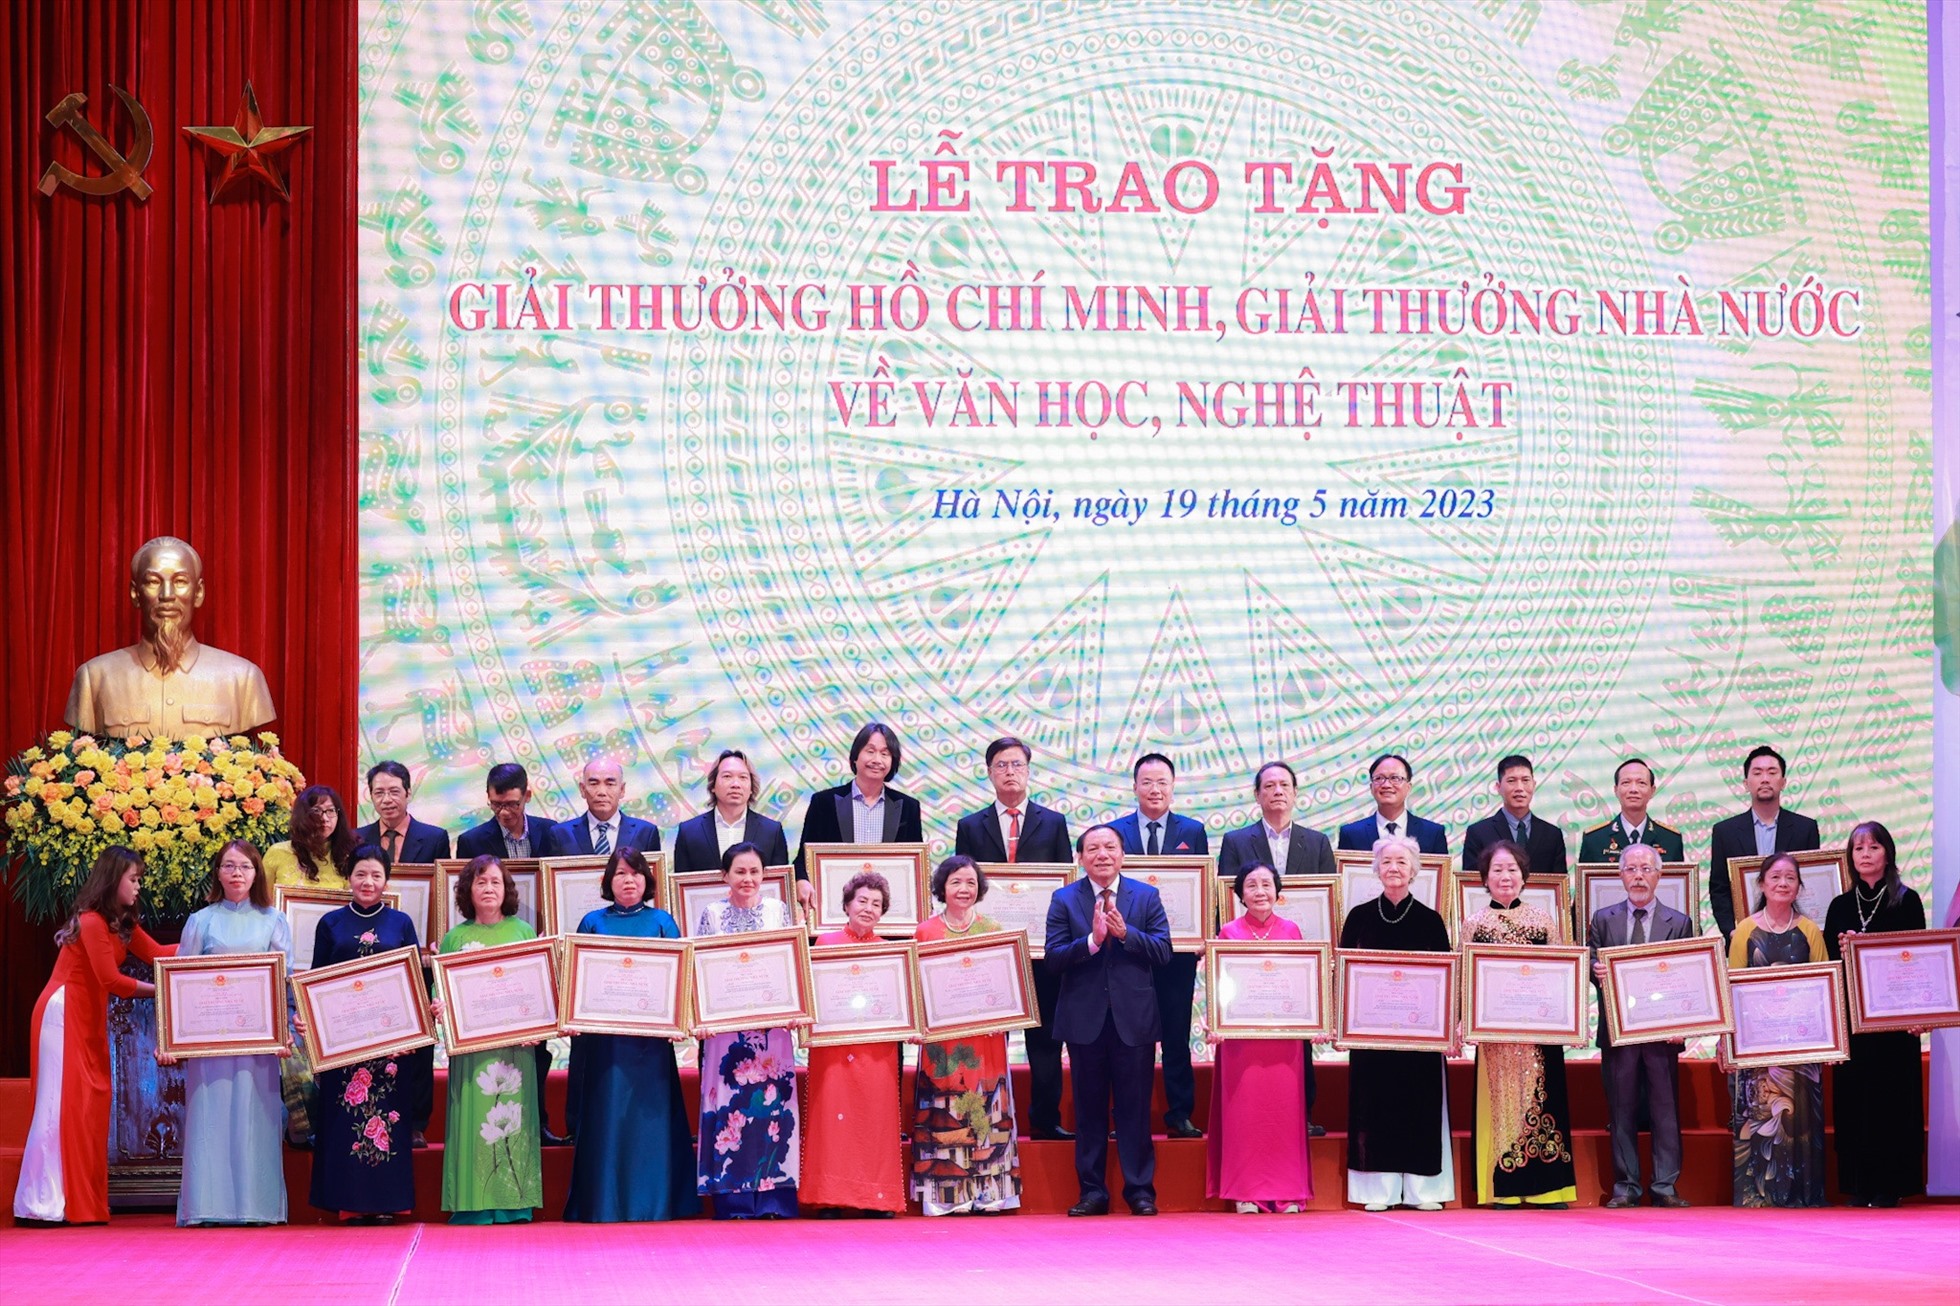 Đúng vào dịp kỷ niệm 133 năm Ngày sinh Chủ tịch Hồ Chí Minh, lễ trao tặng Giải thưởng Hồ Chí Minh và Giải thưởng Nhà nước về Văn học nghệ thuật năm 2022 sẽ được tổ chức tại Nhà hát Lớn Hà Nội vào ngày 19.5. Ảnh: Hải Nguyễn